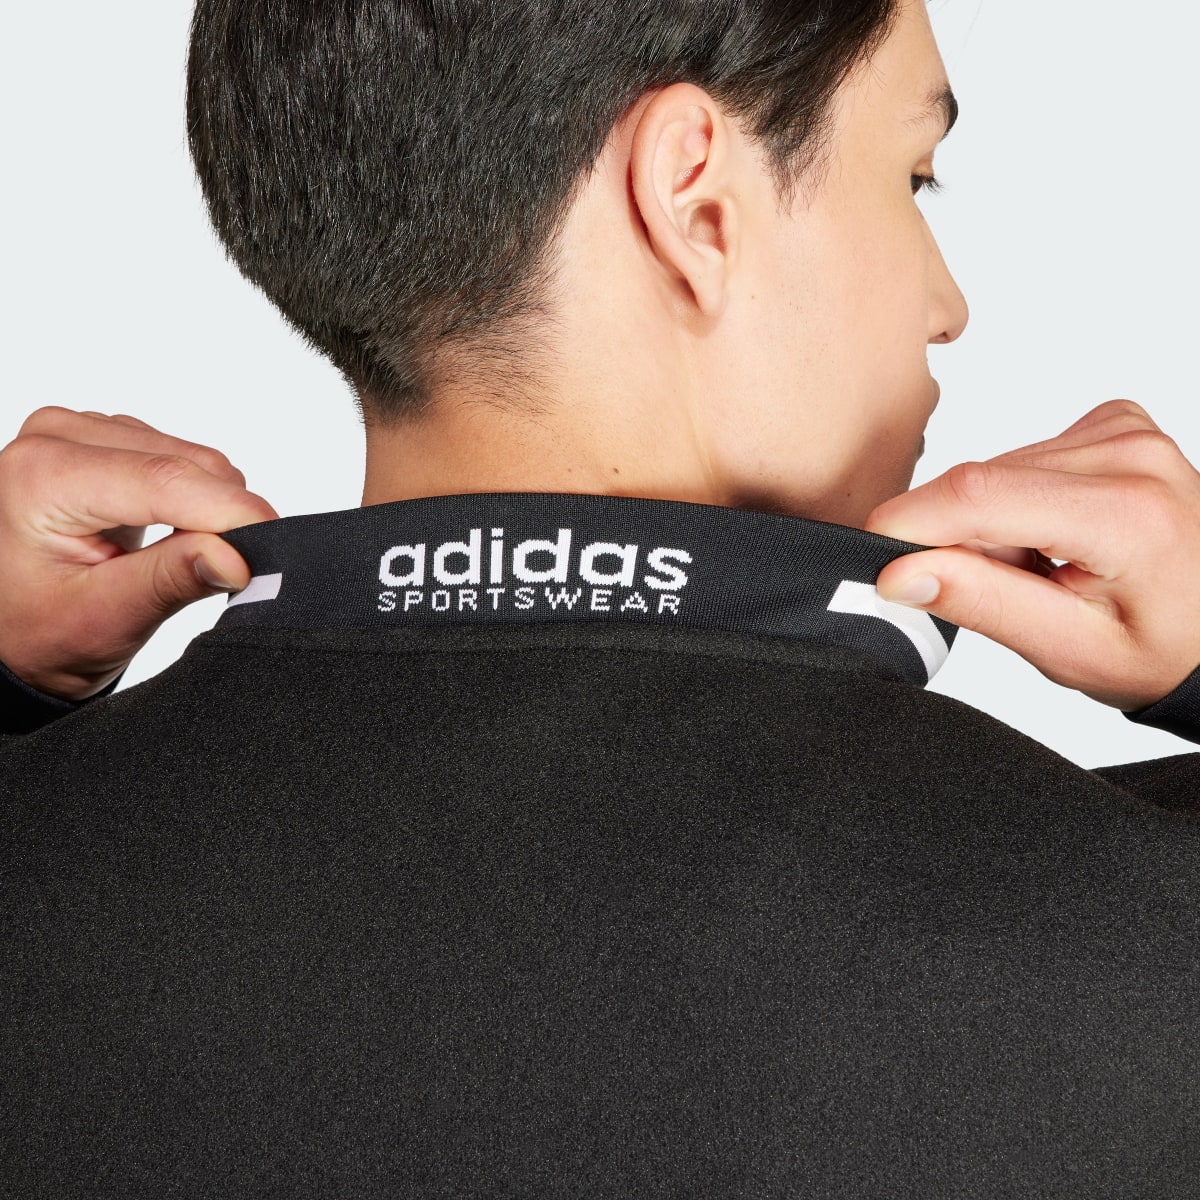 Adidas Collegiate Premium Jacket. 6